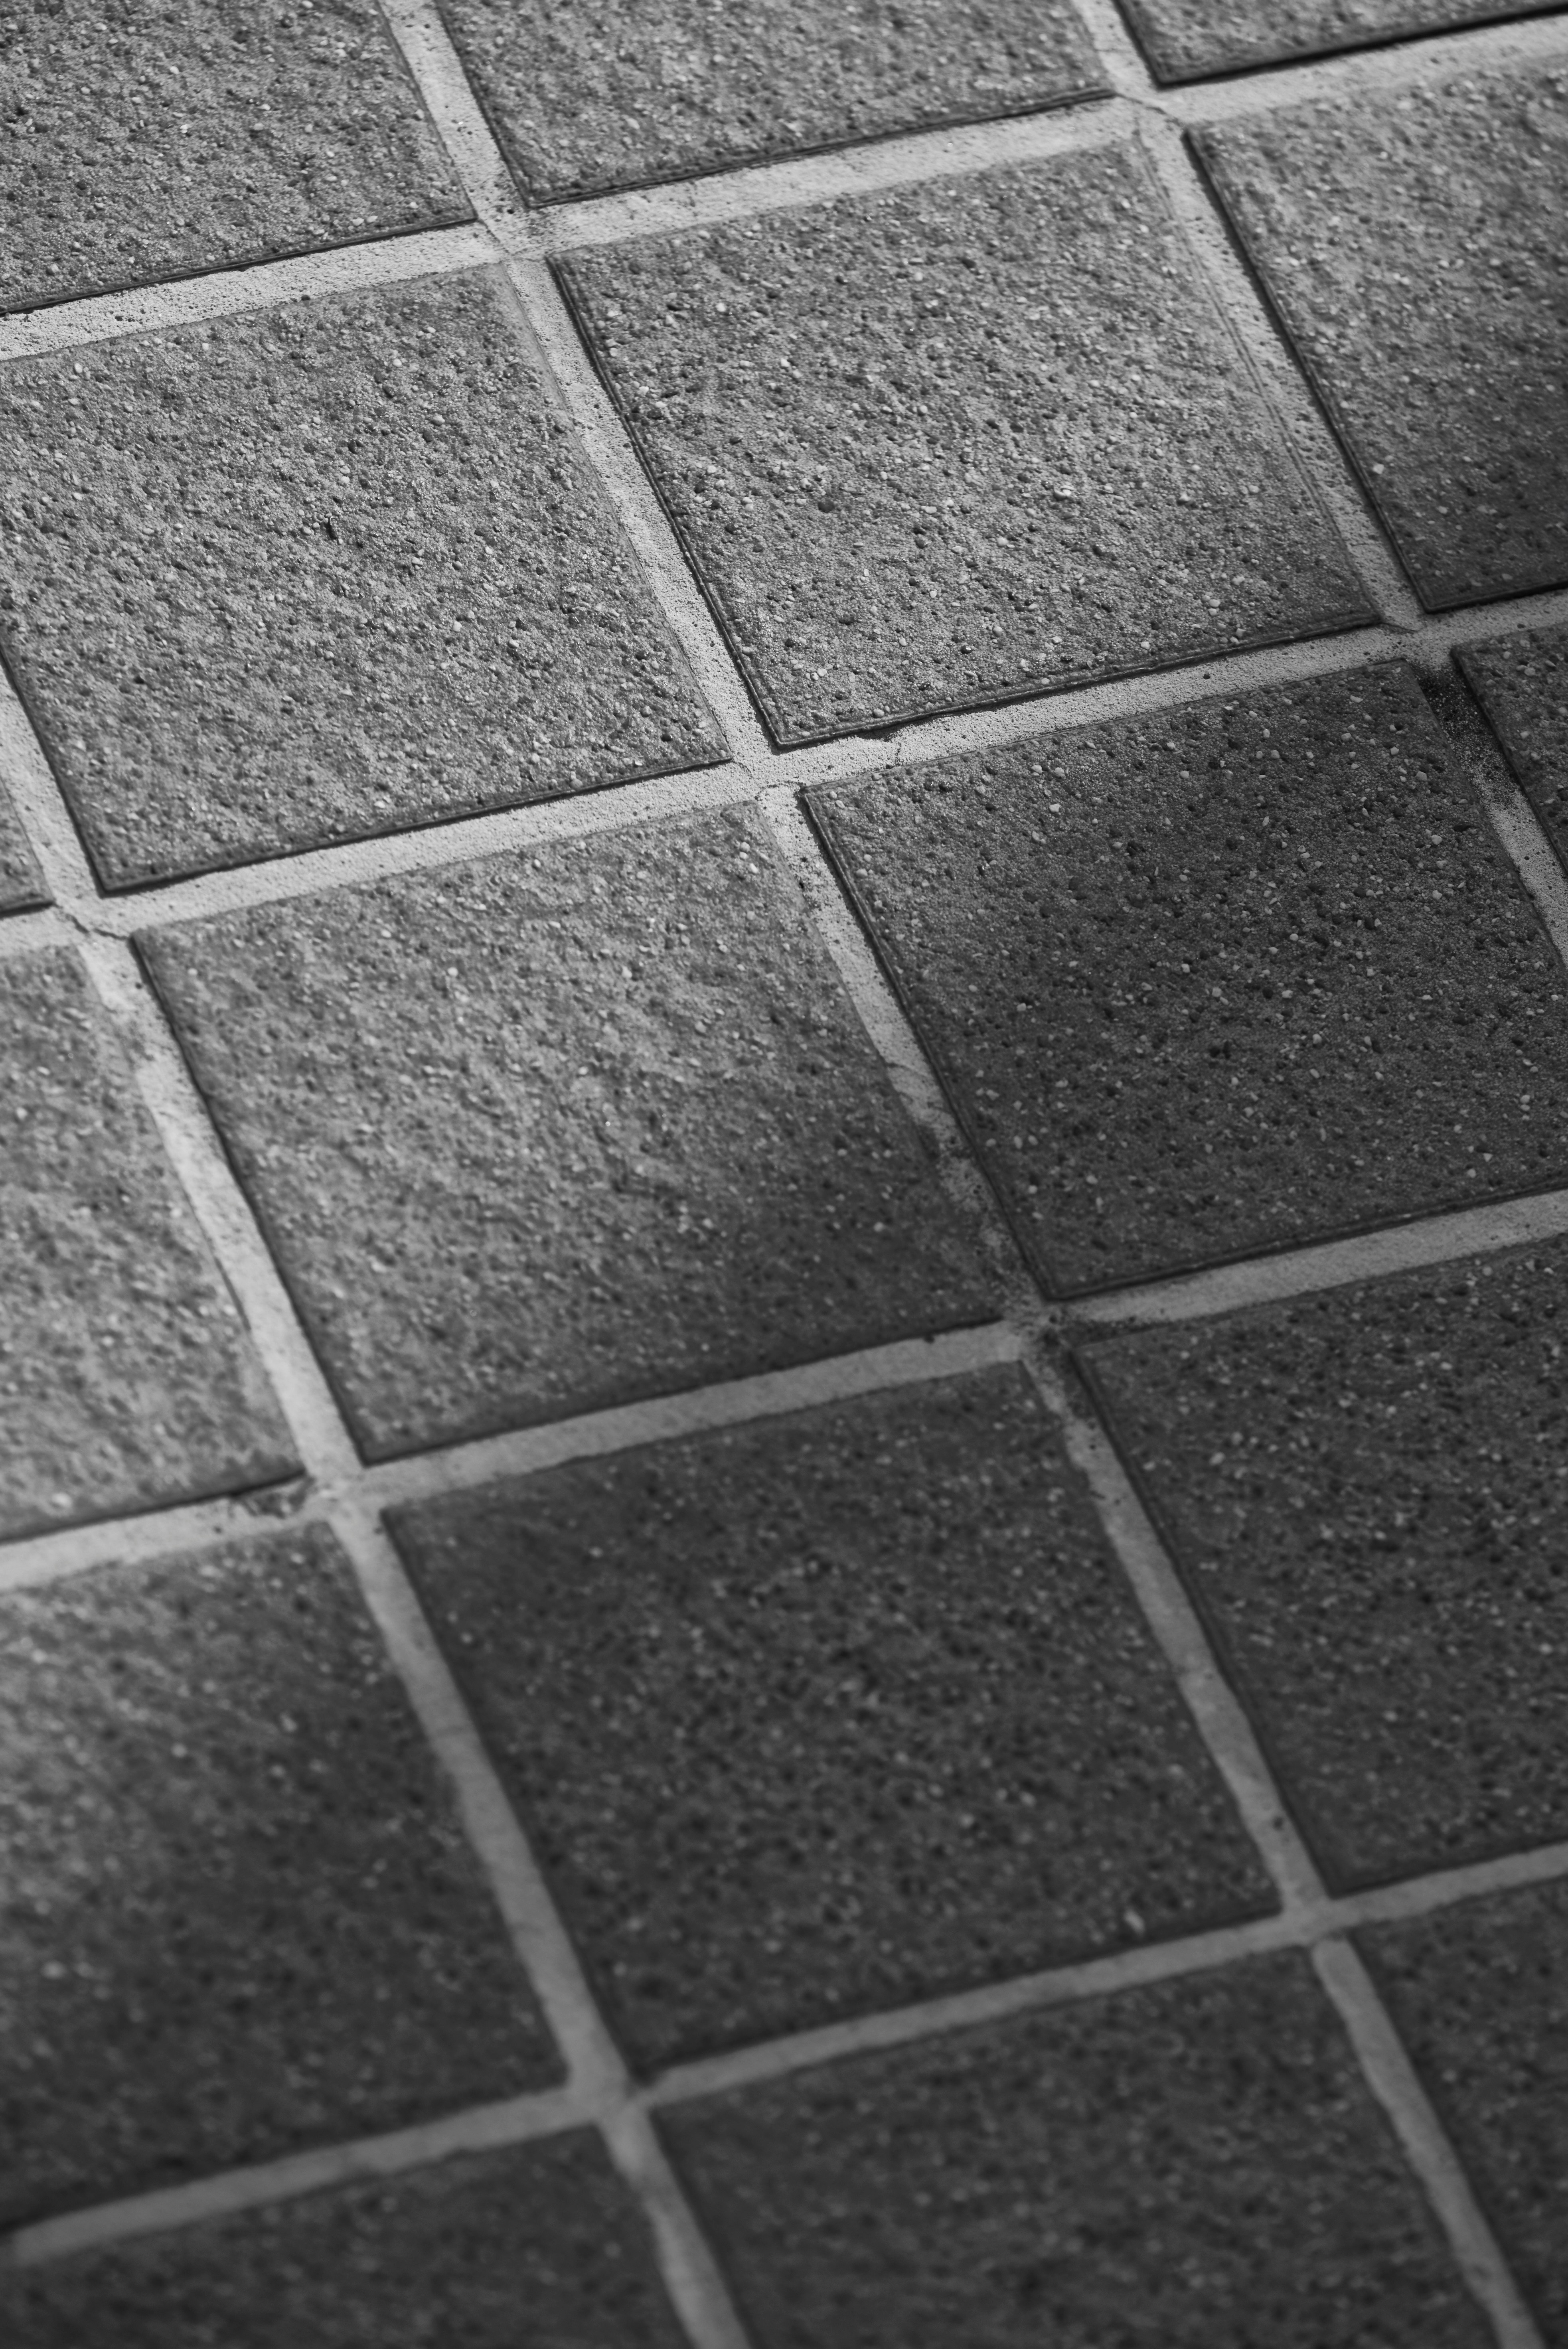 grayscale photo of concrete brick